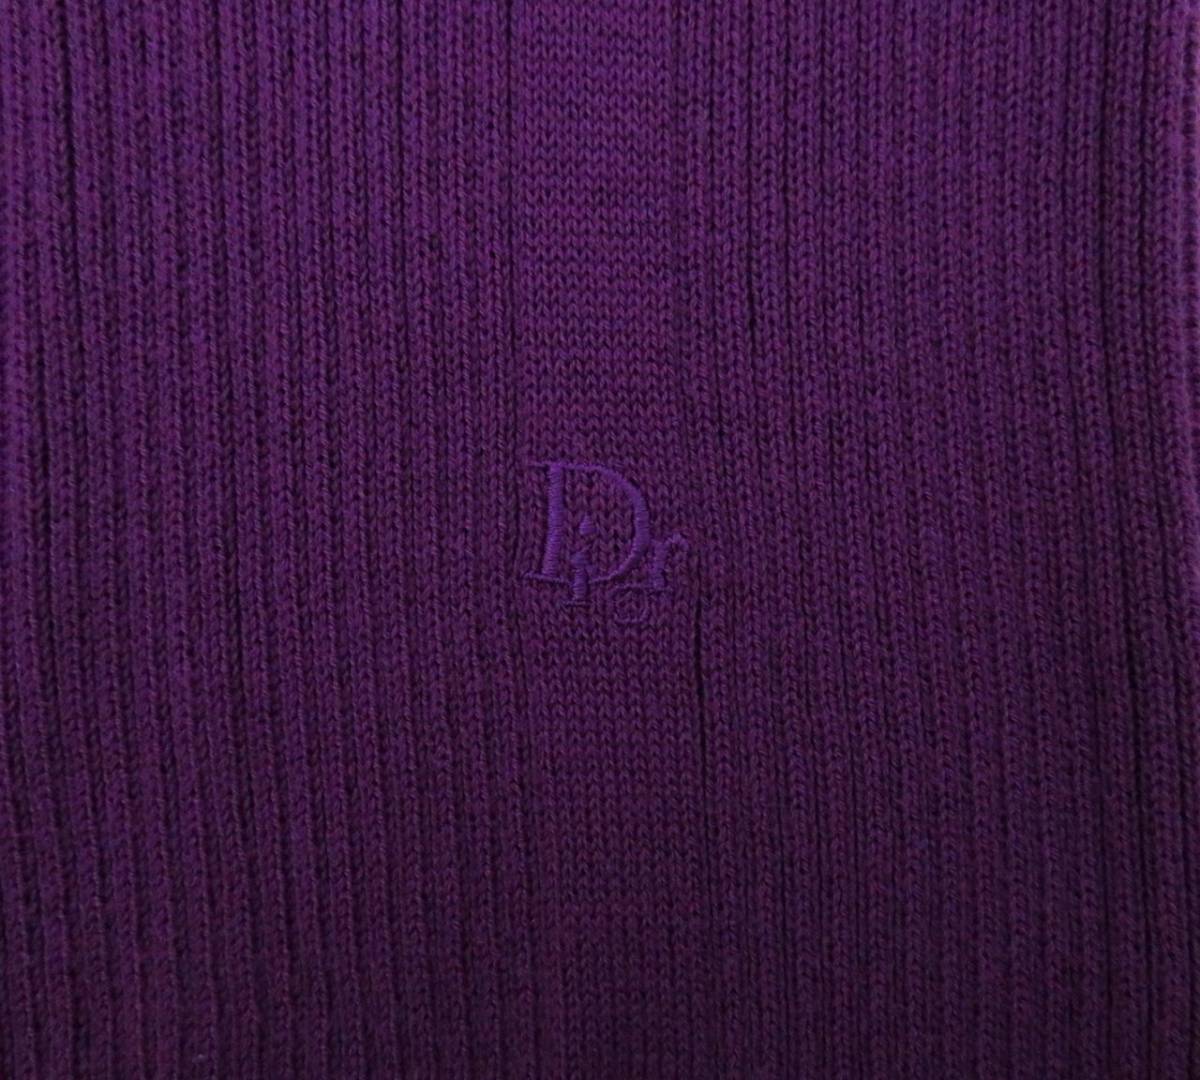 4792 美品 Christian Dior クリスチャンディオール vintage ロゴ刺繍入り 半袖 ニット セーター Tシャツ カットソー 紫 パープル 希少 